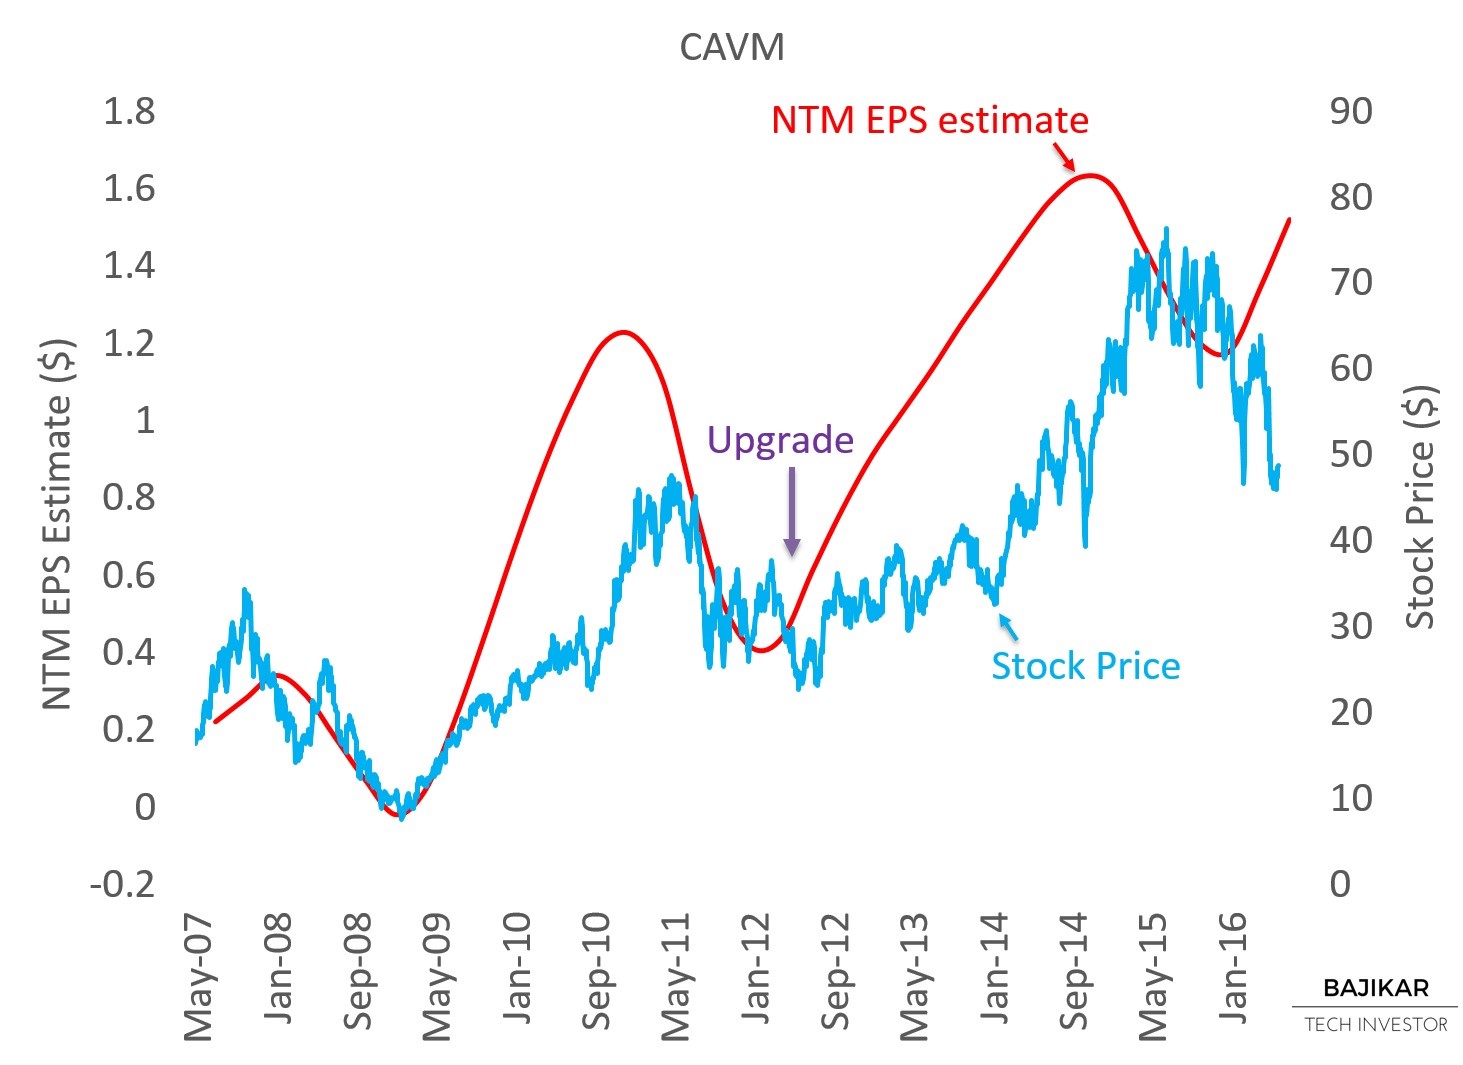 CAVM NTM EPS vs. Stock Price